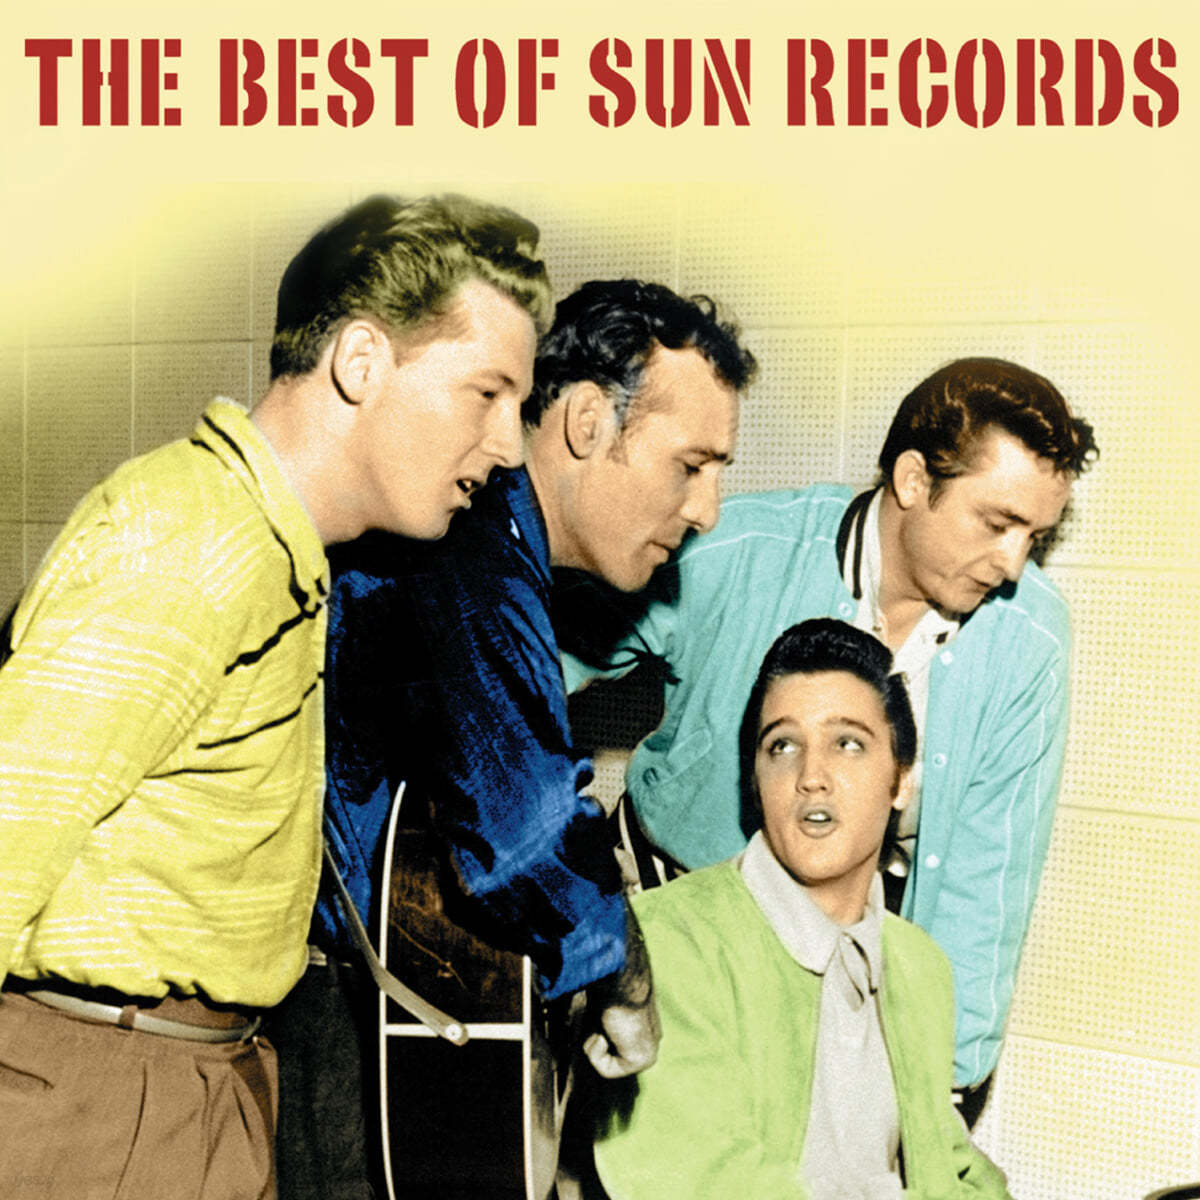 선레코드 베스트 모음집 (The Best Of Sun Records)